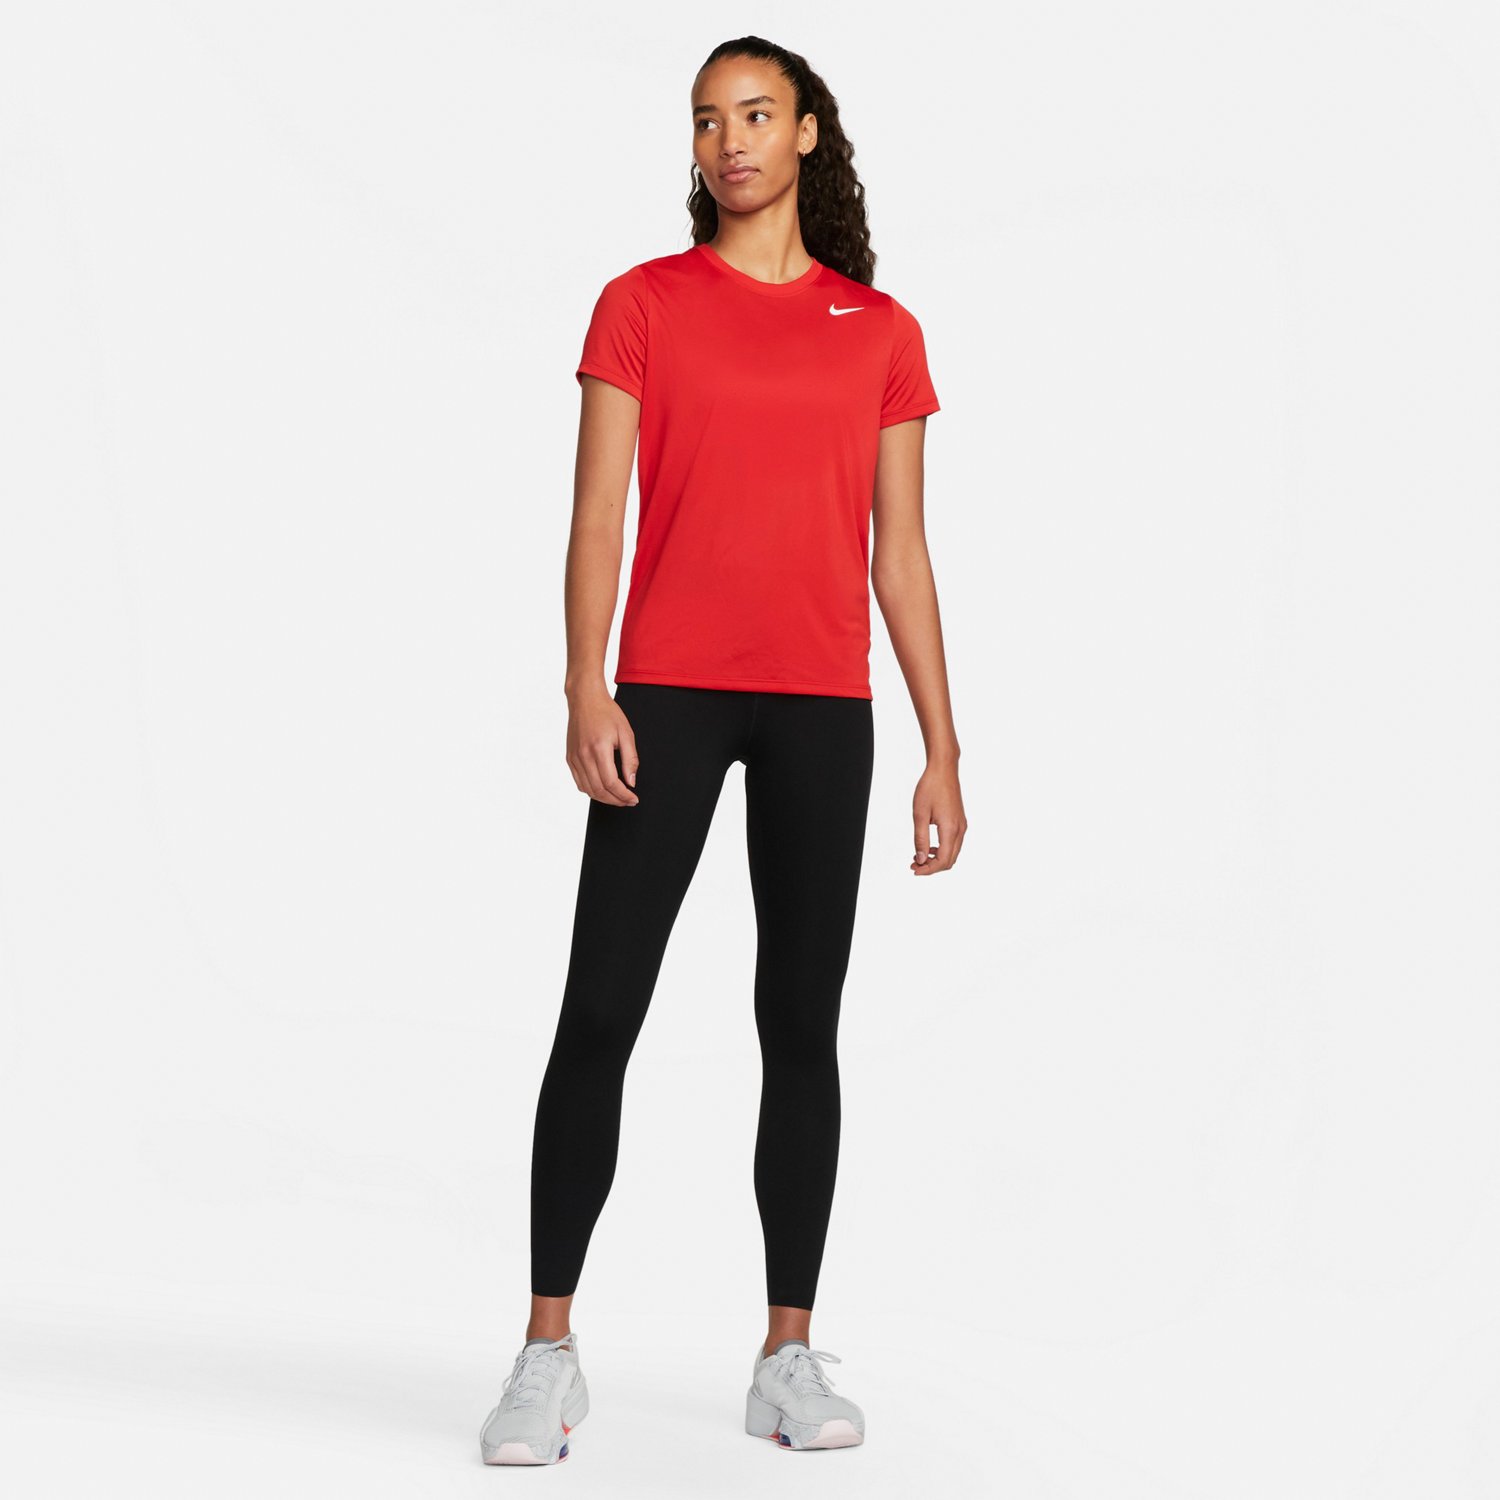 Nike Women's Dri-Fit Legend T-Shirt, Small, Mica Green